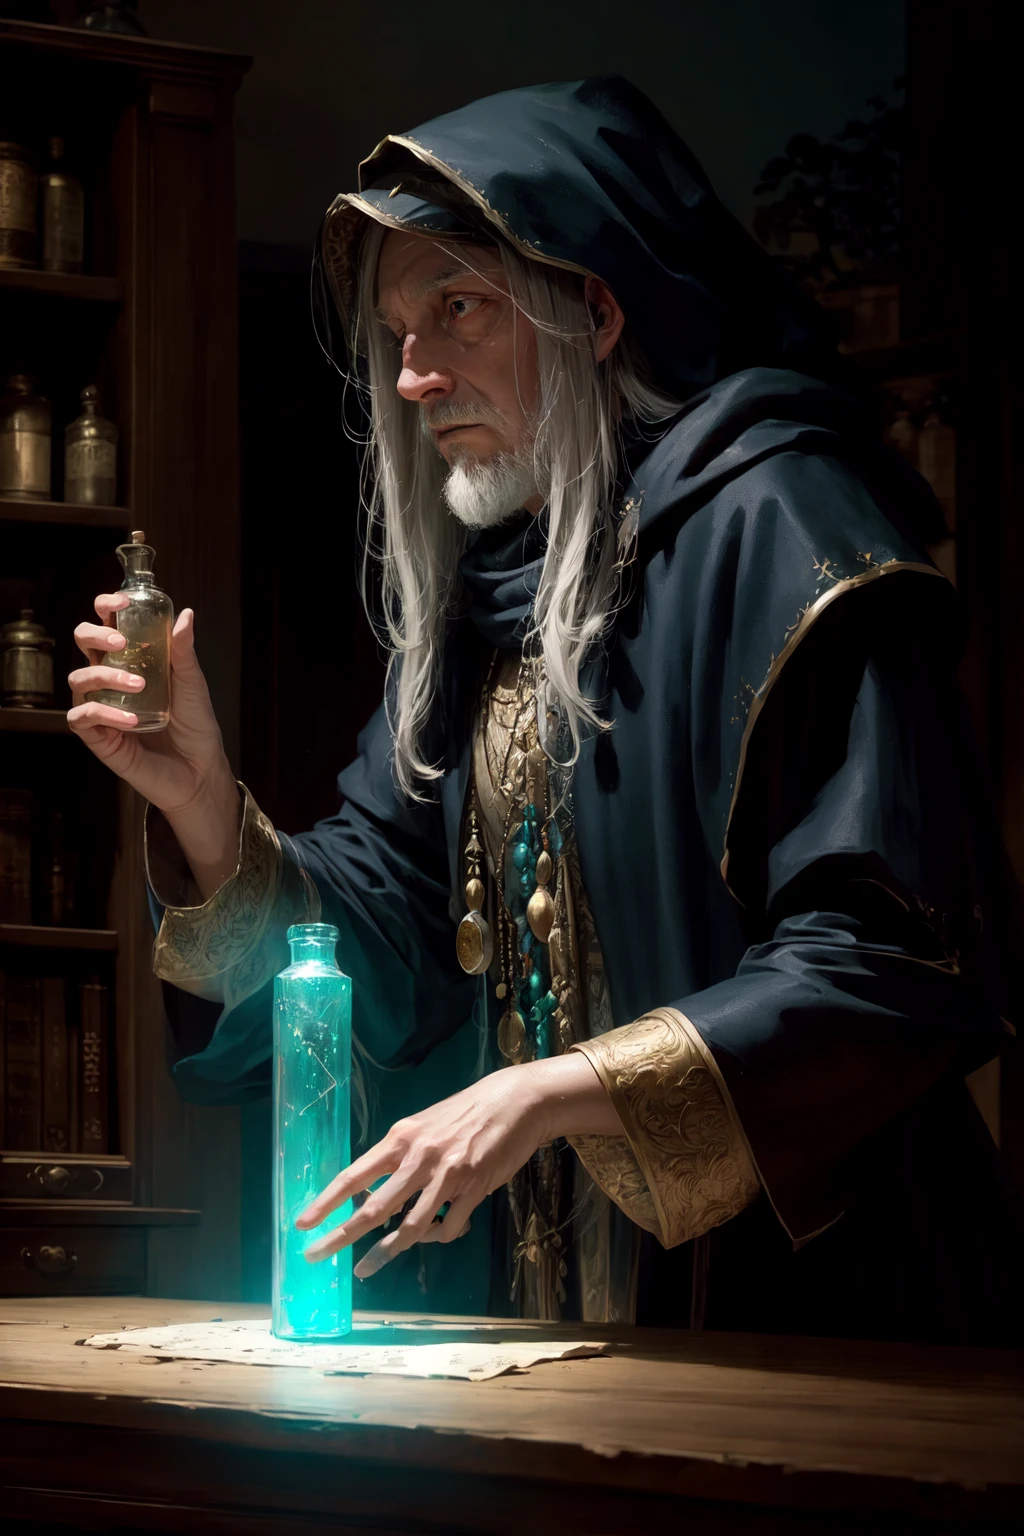 реалистичный, шедевр, Лучшее качество, старый мудрый волшебник смешивает зелья, Угрюмое освещение, Светиться, Светитьсяing, загадочный, Мистический, волшебный, ободовое освещение